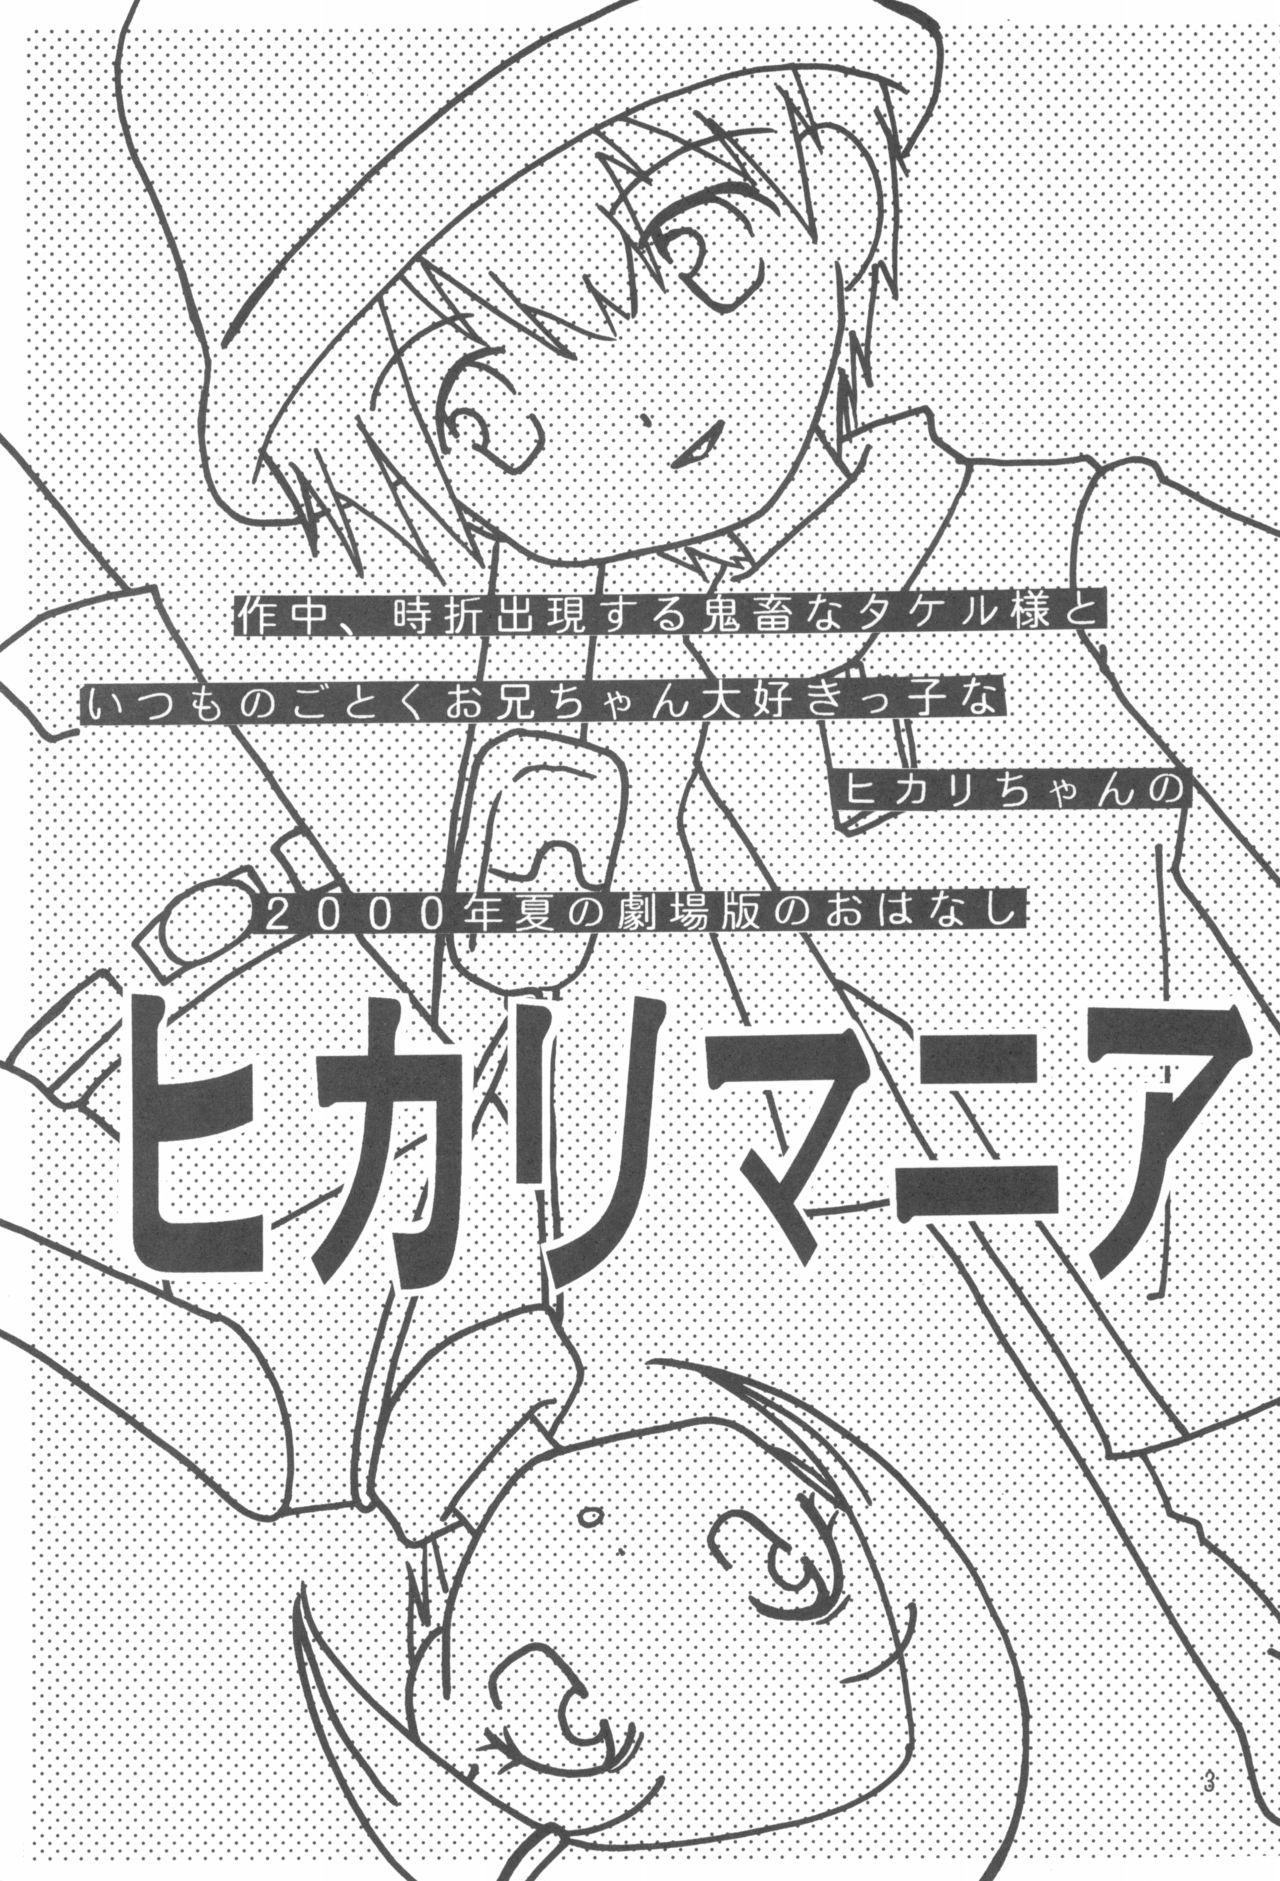 Oriental Hikari Mania - Digimon adventure Pasivo - Page 2